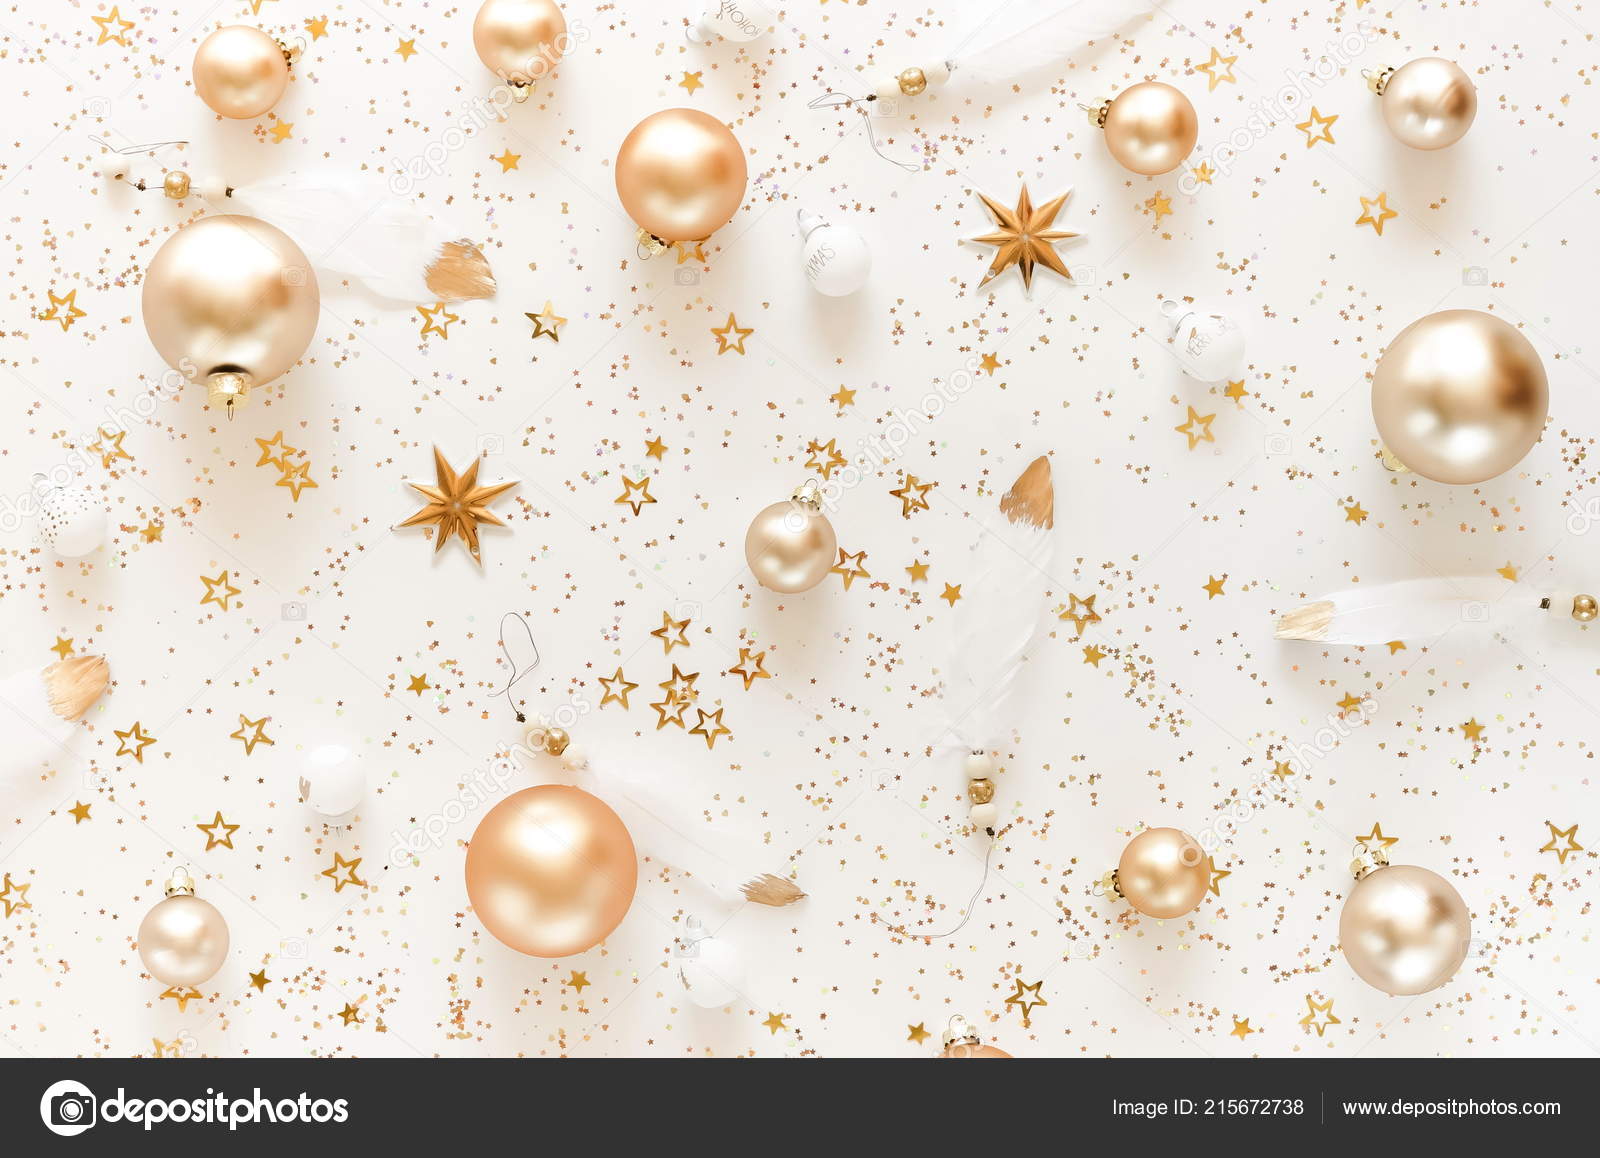 Nếu bạn đang tìm kiếm những đồ trang trí Giáng sinh đẹp mắt và tinh tế, hãy xem qua những mẫu hoa văn nền trắng vàng này. Chúng sẽ làm cho không gian của bạn trở nên lung linh và đầy ấm cúng hơn.